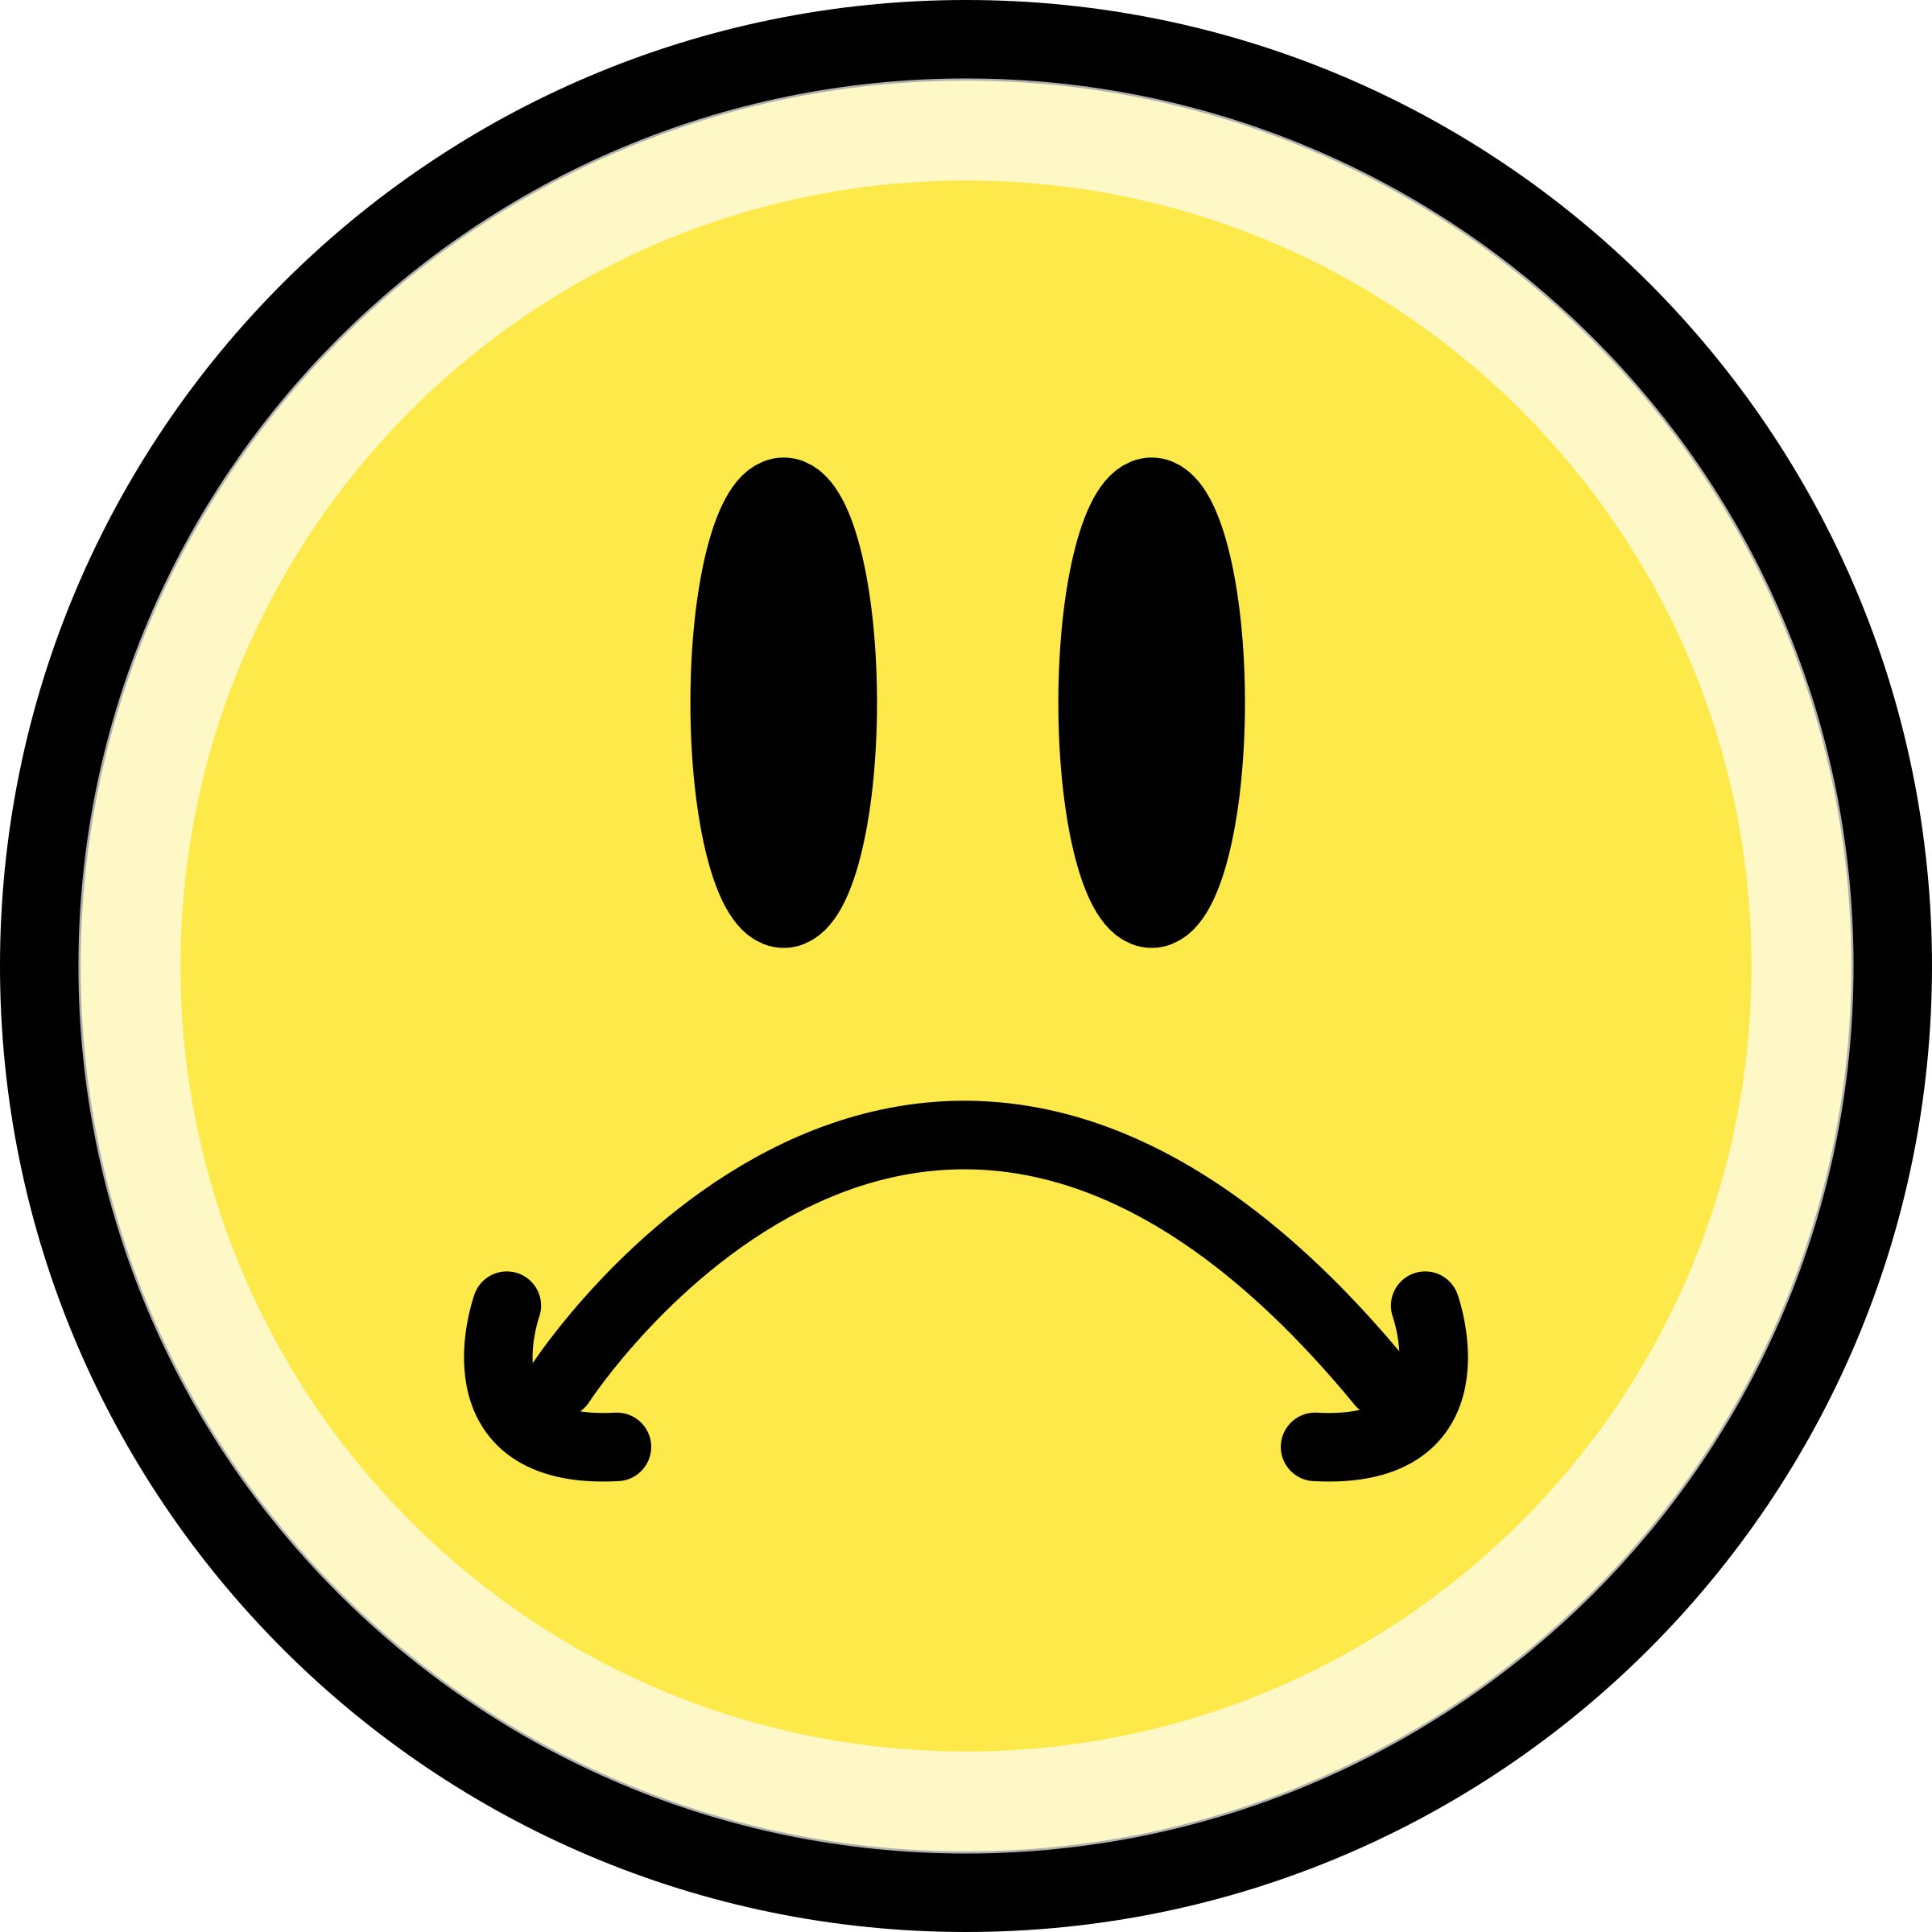 Handcuffs clipart emoji. Sad face emoticon yellow